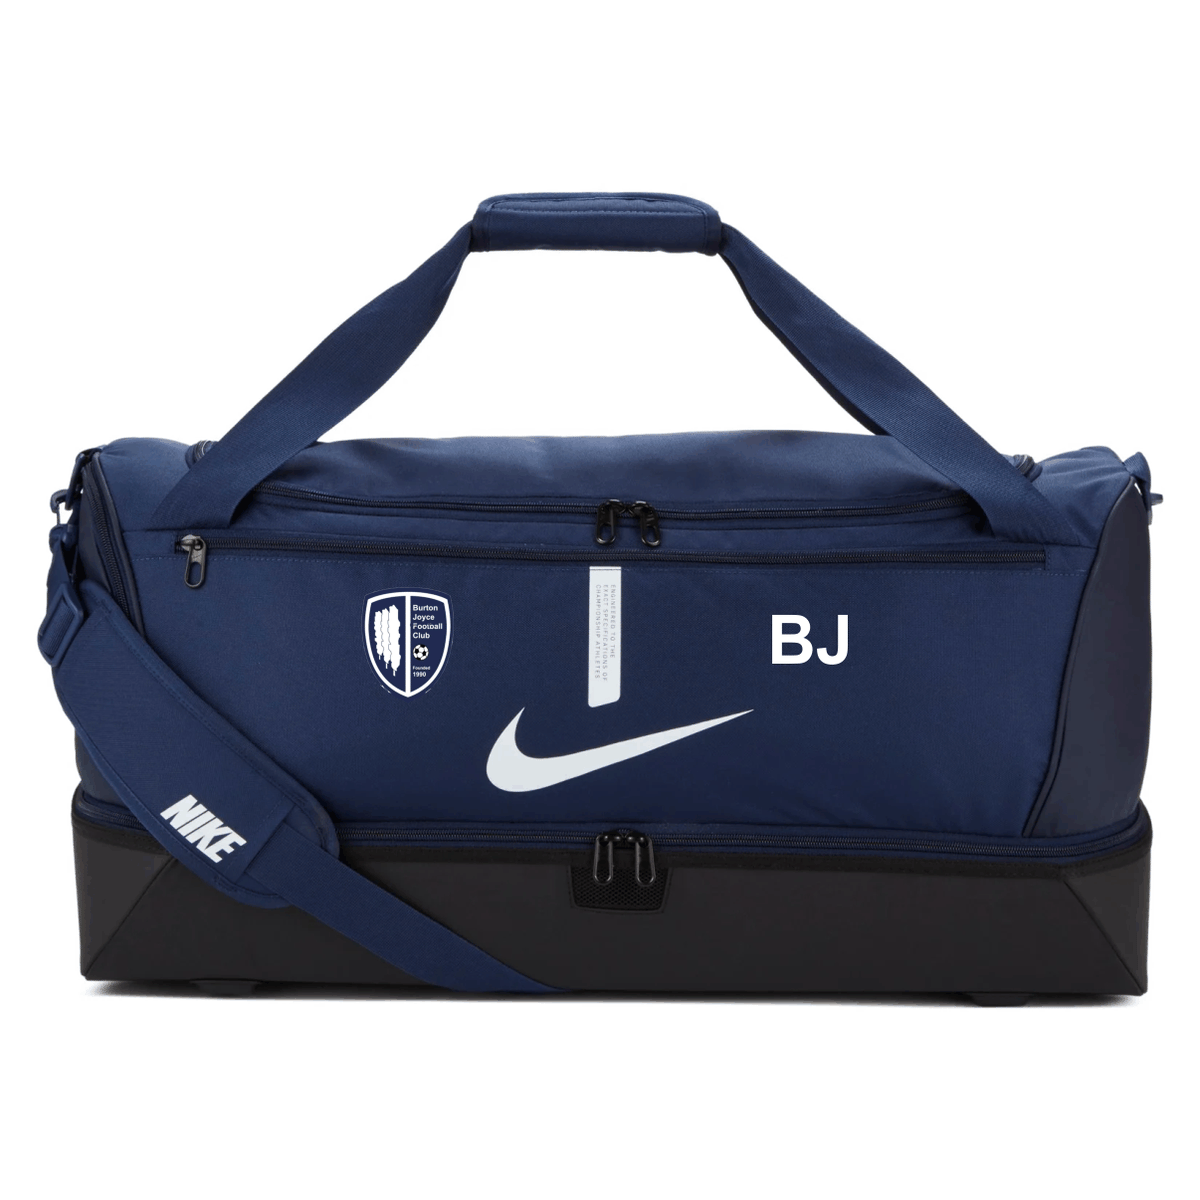 Burton Joyce - Academy Hardcase Duffel Bag